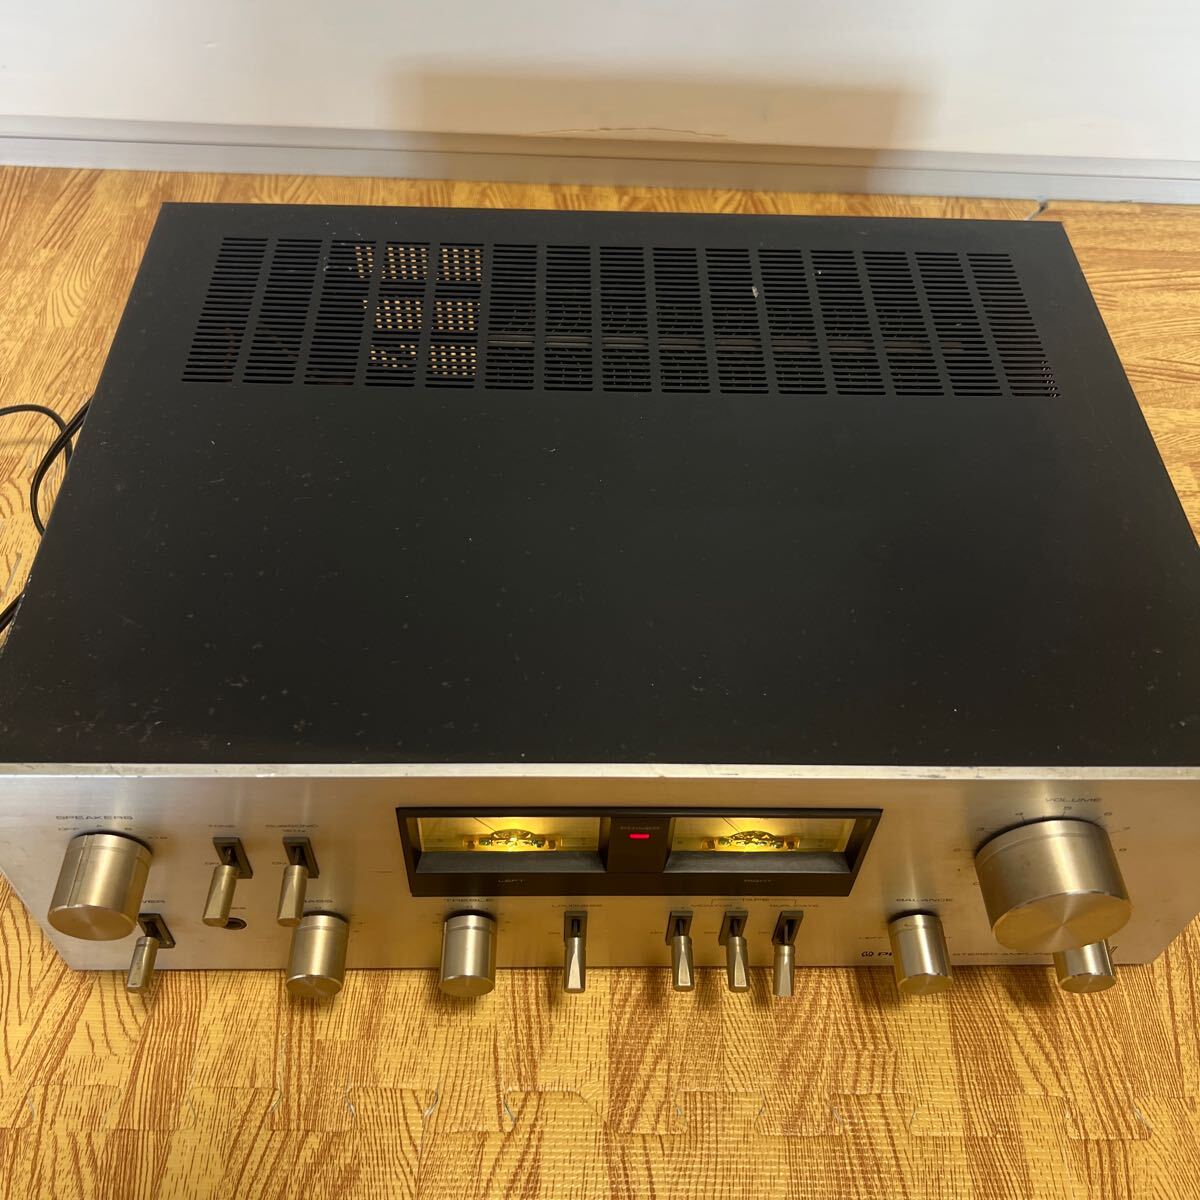 Pioneer Pioneer pre-main amplifier SA-7800Ⅱ present condition goods 